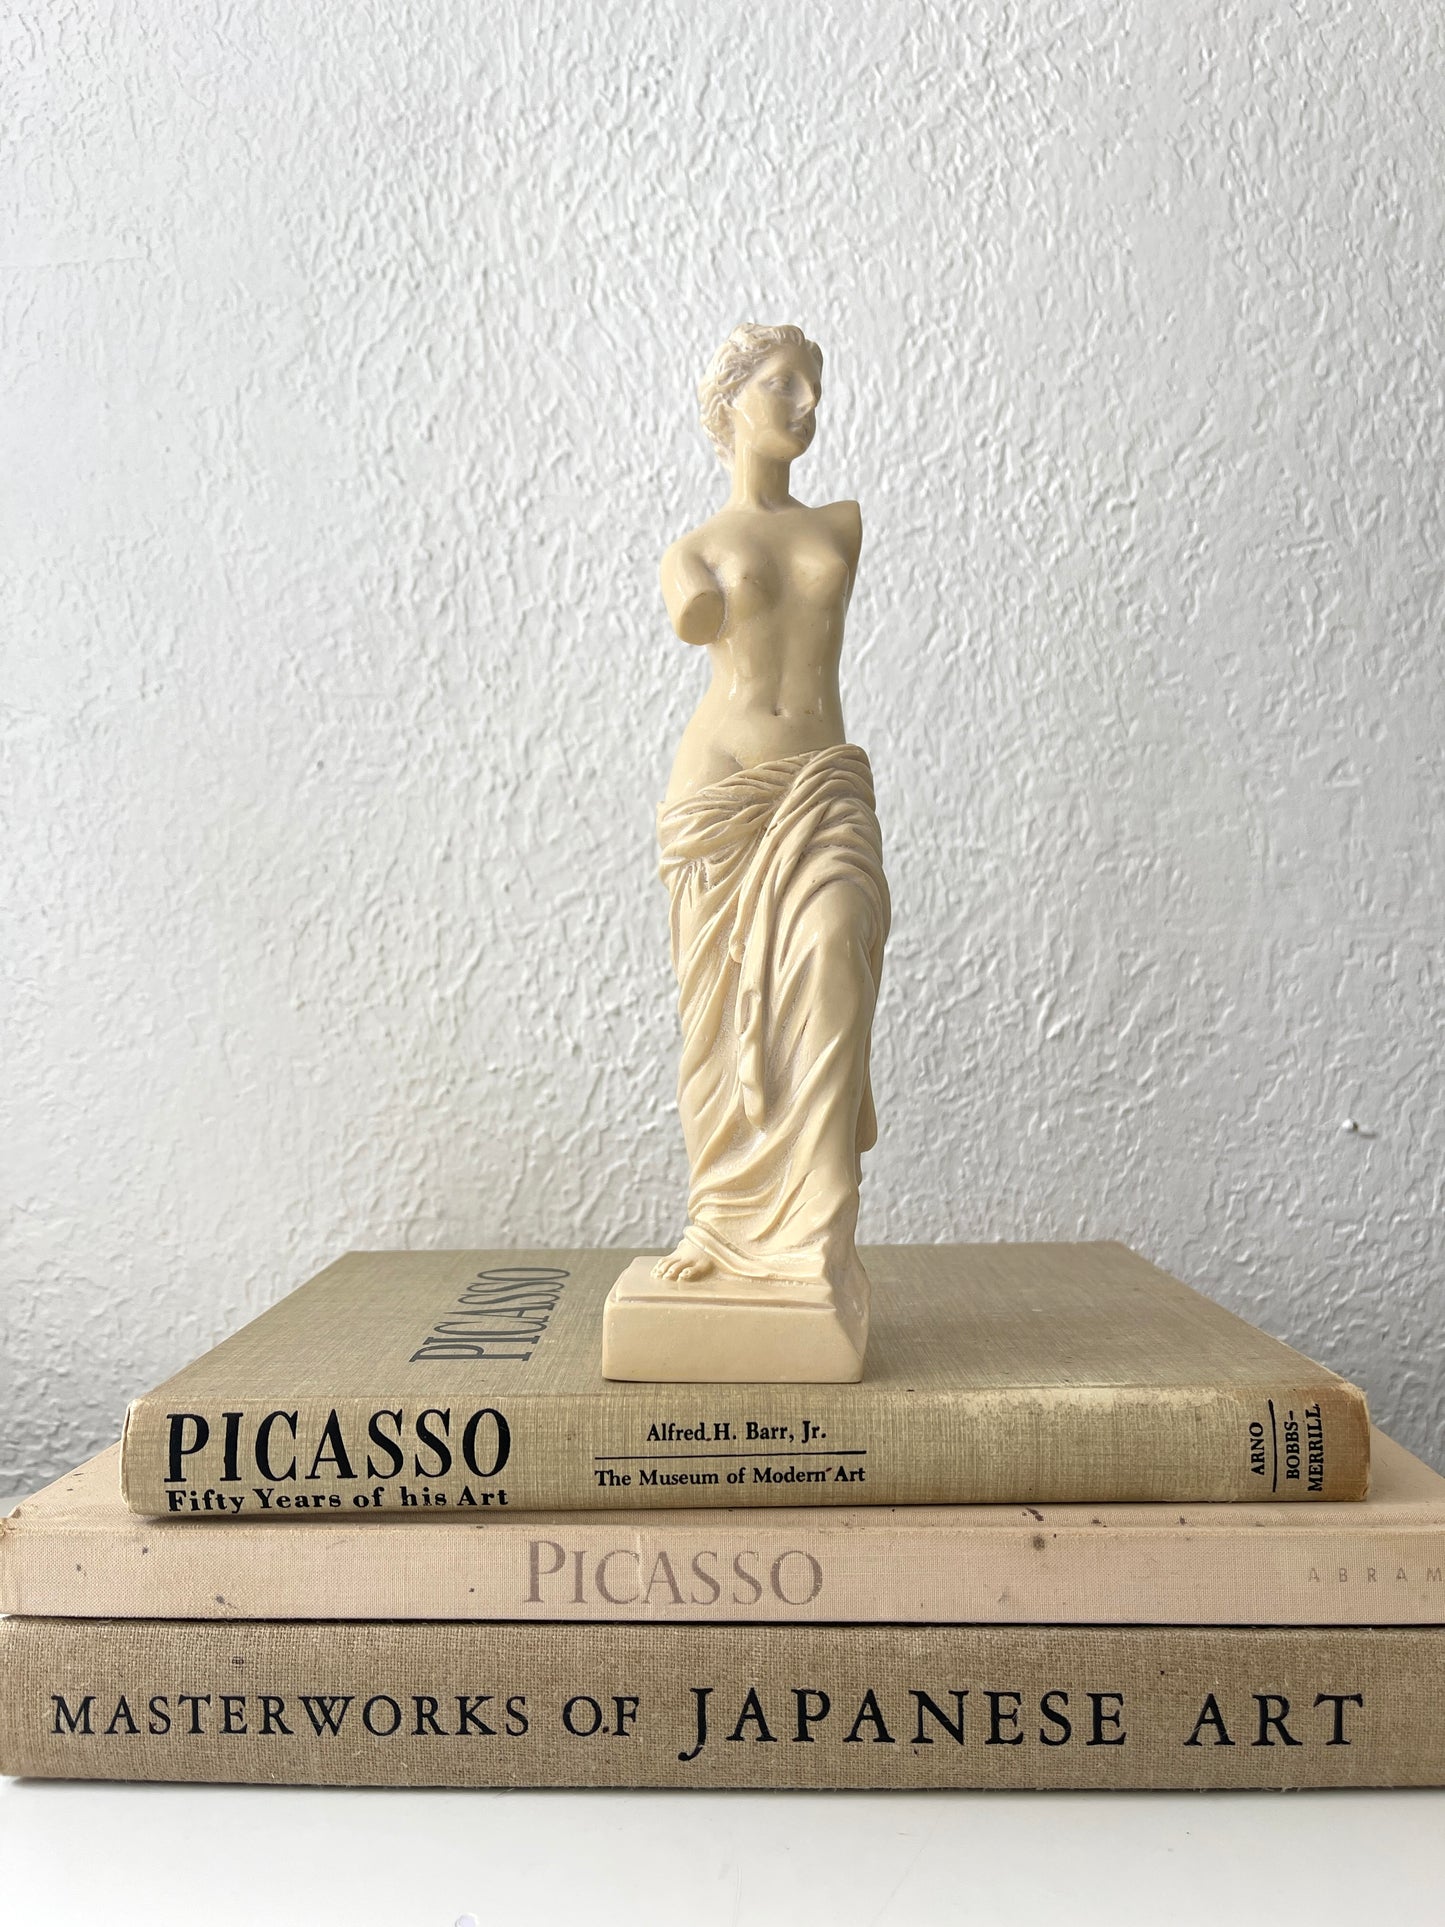 Vintage Venus De Milo sculpture | Greek sculpture